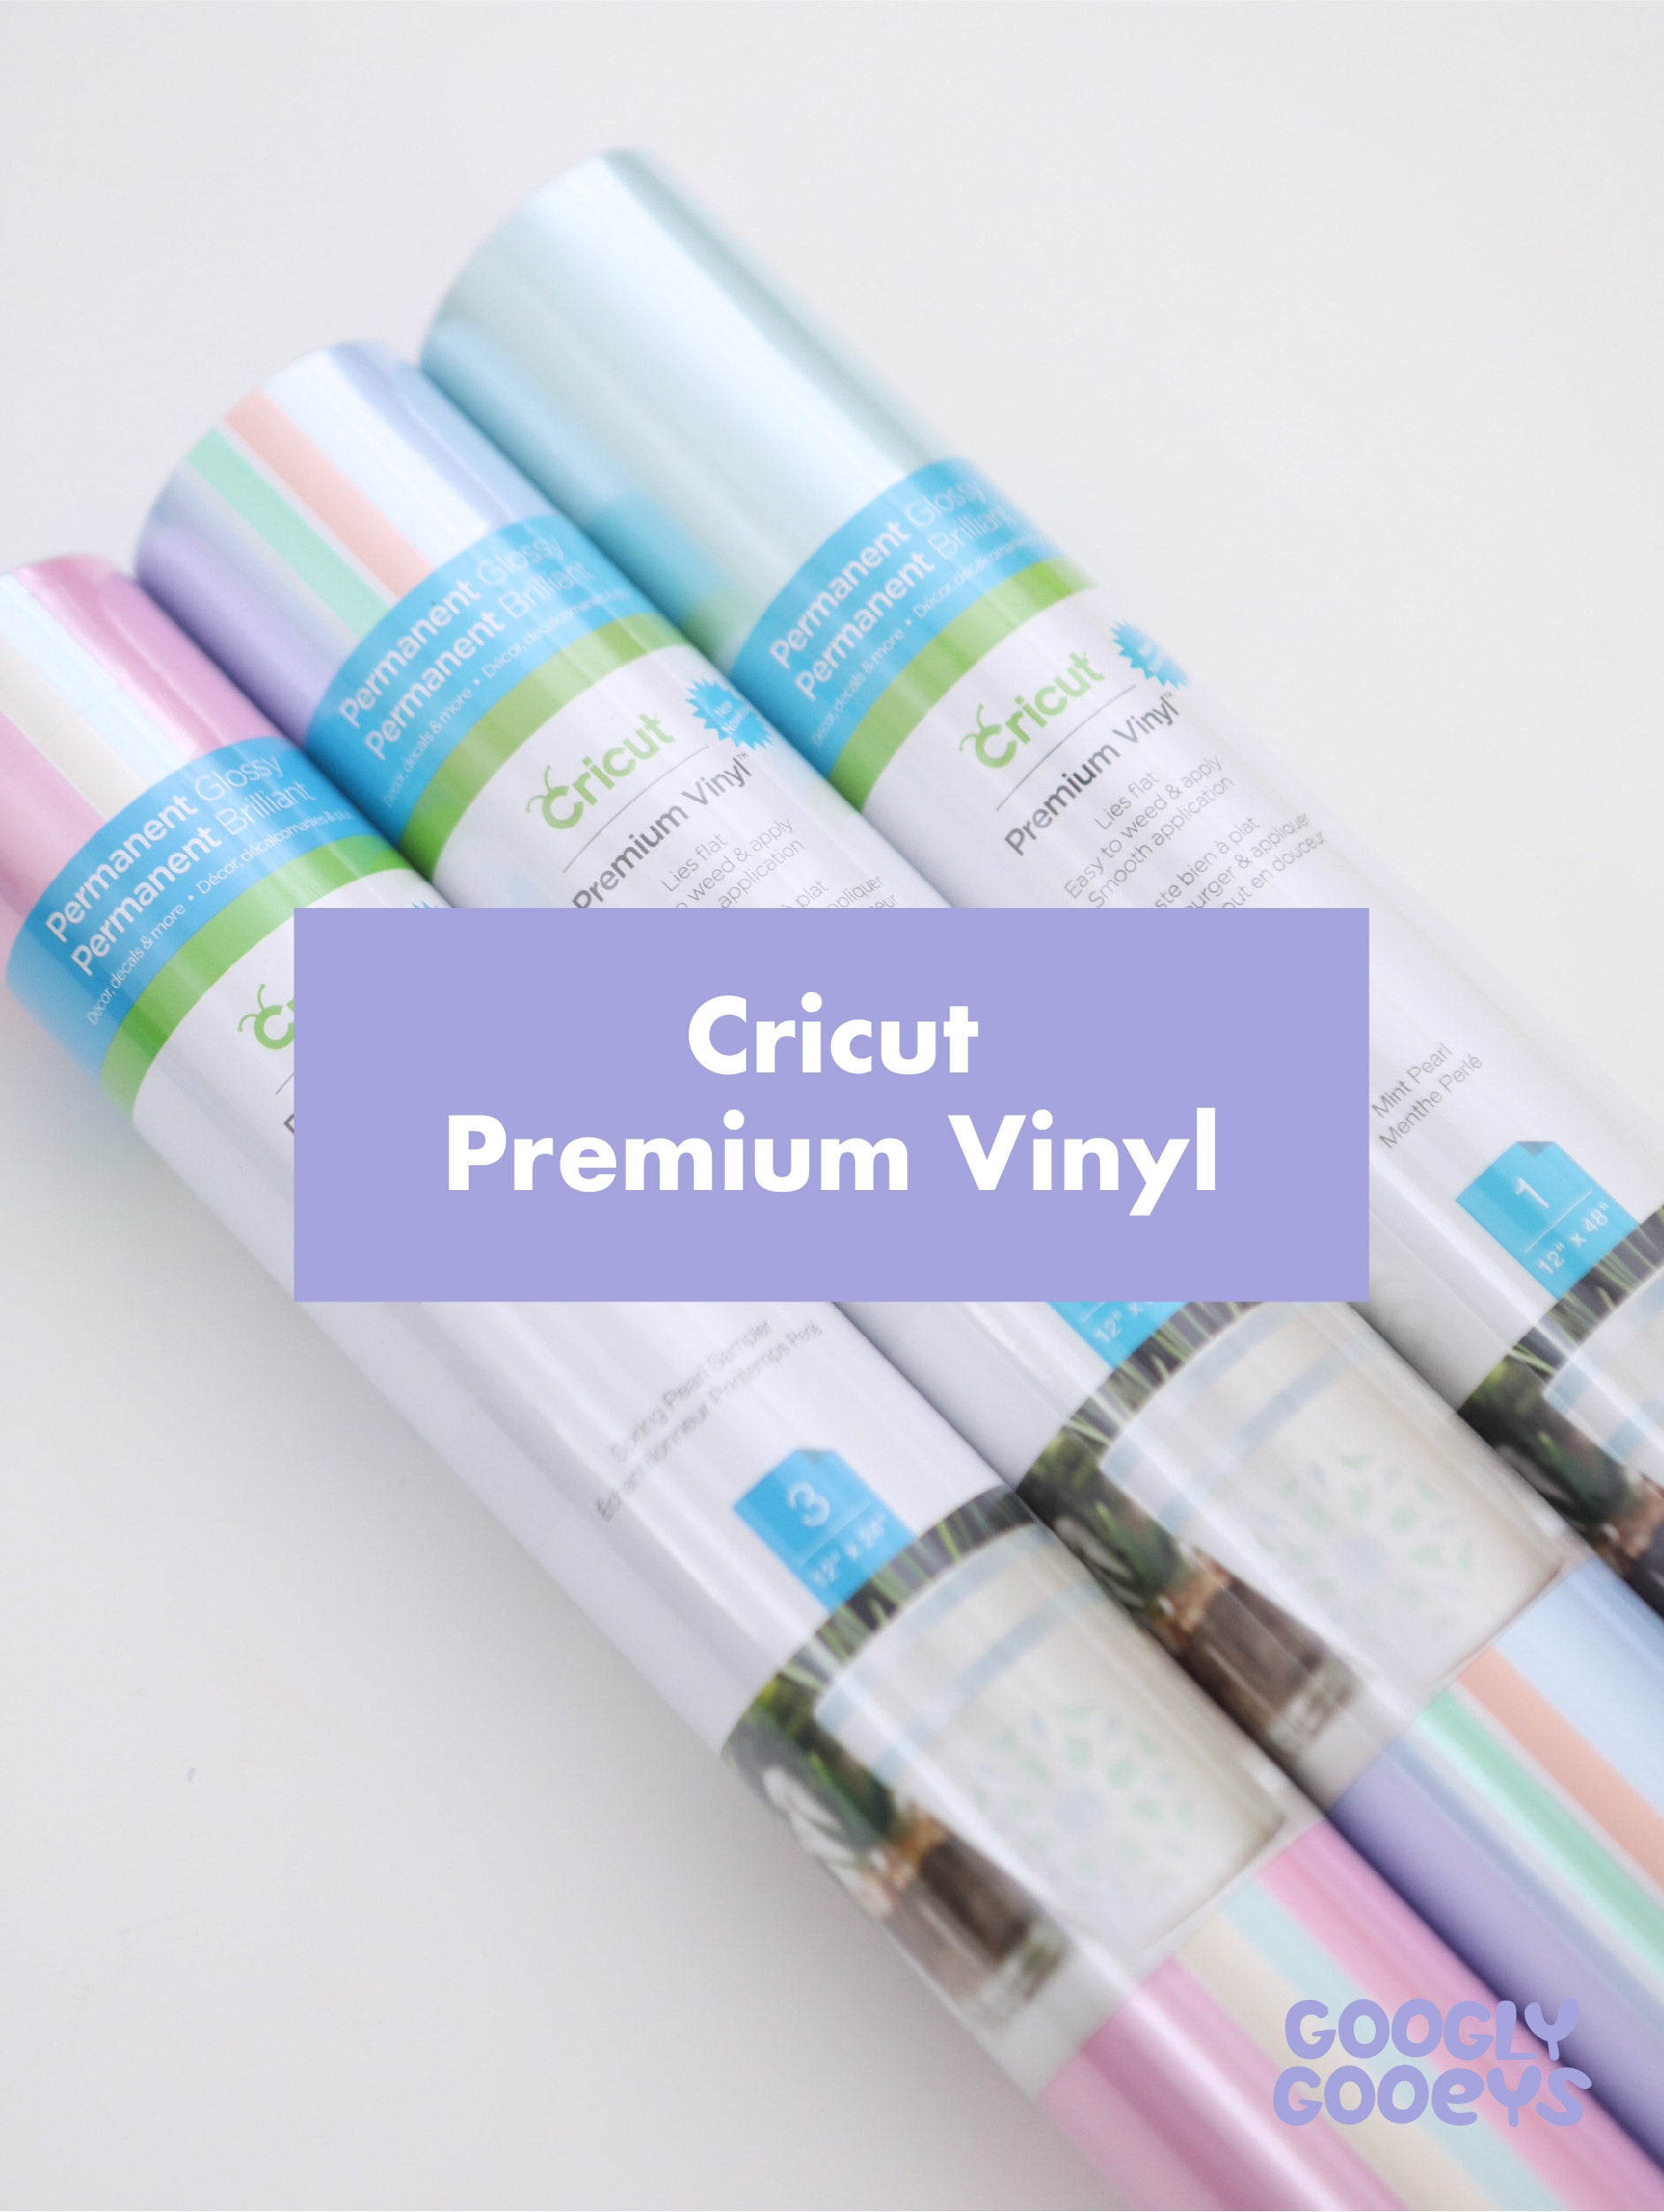 Cricut Premium Vinyl